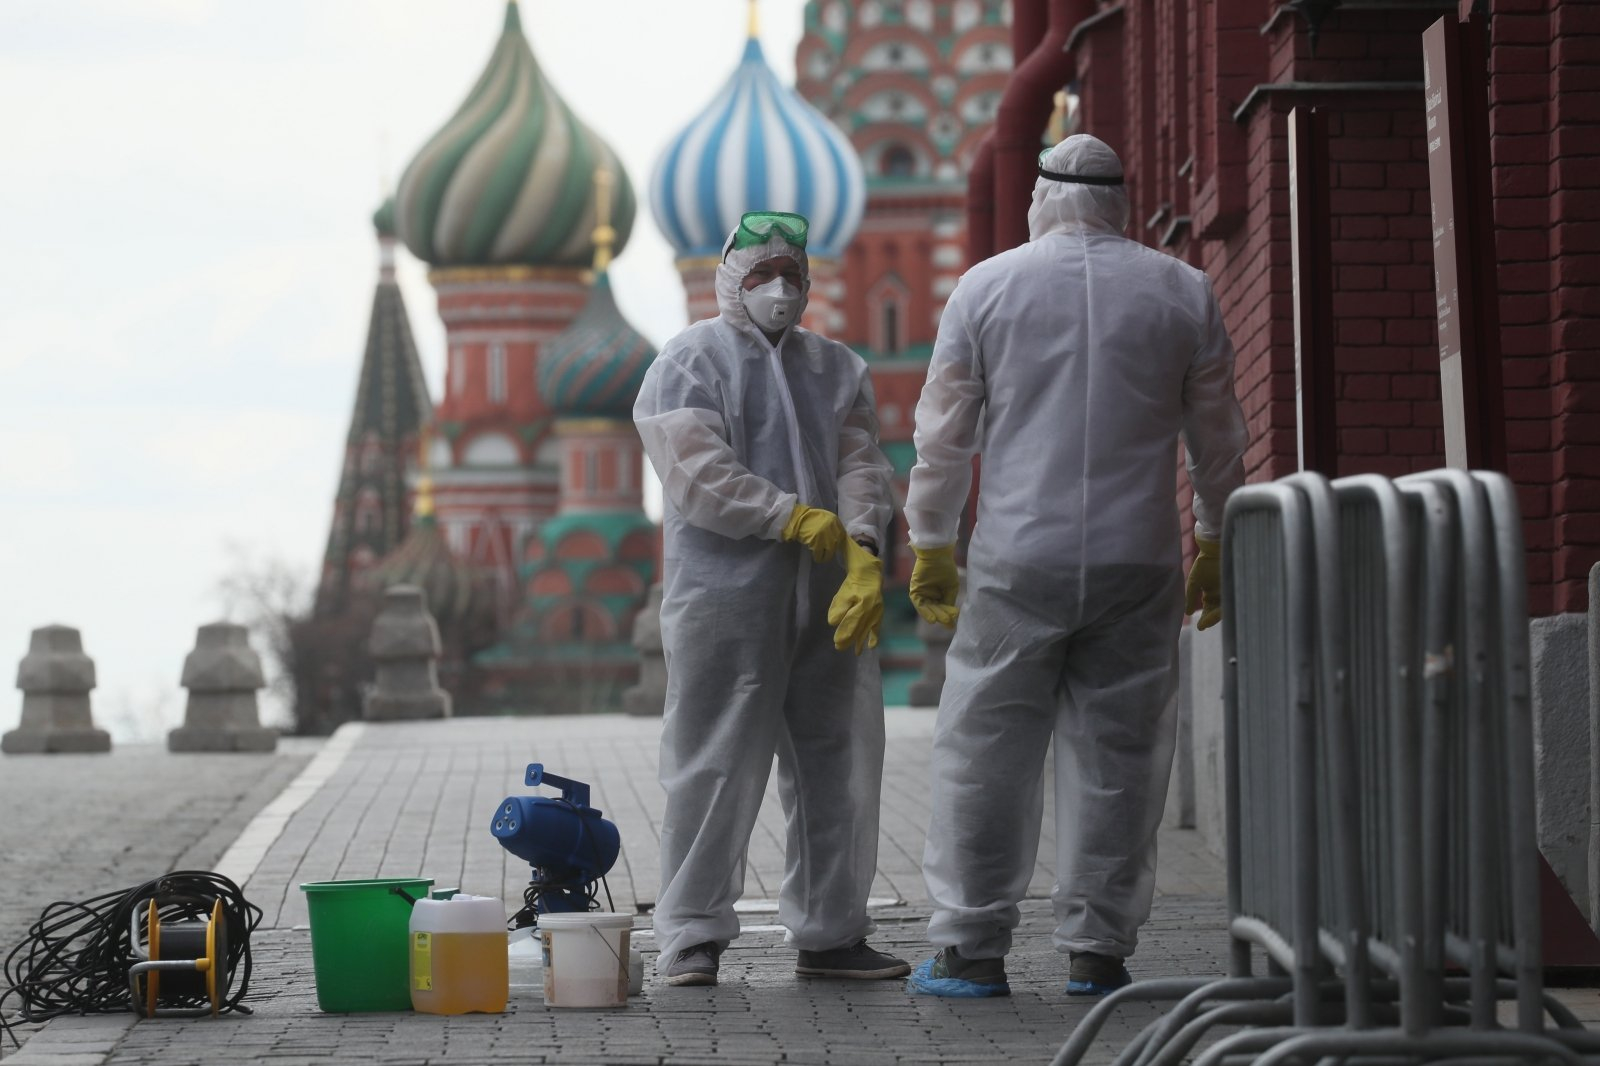 В России выявили 5427 новых случаев коронавируса